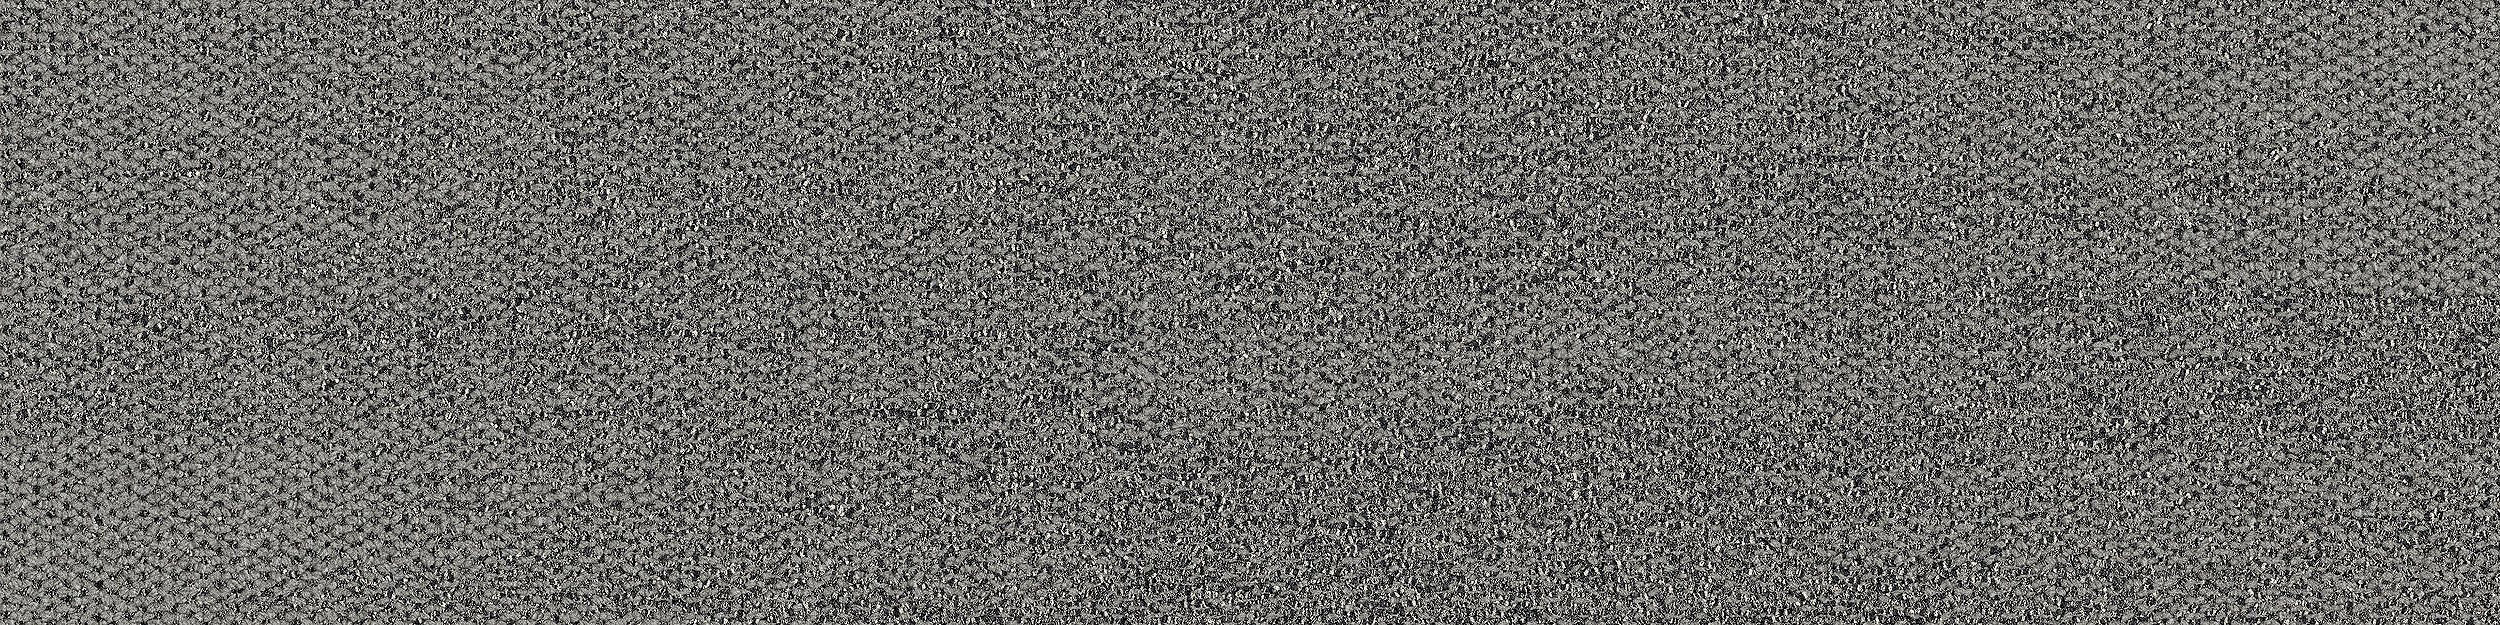 Open Air 410 Carpet Tile In Flannel numéro d’image 5